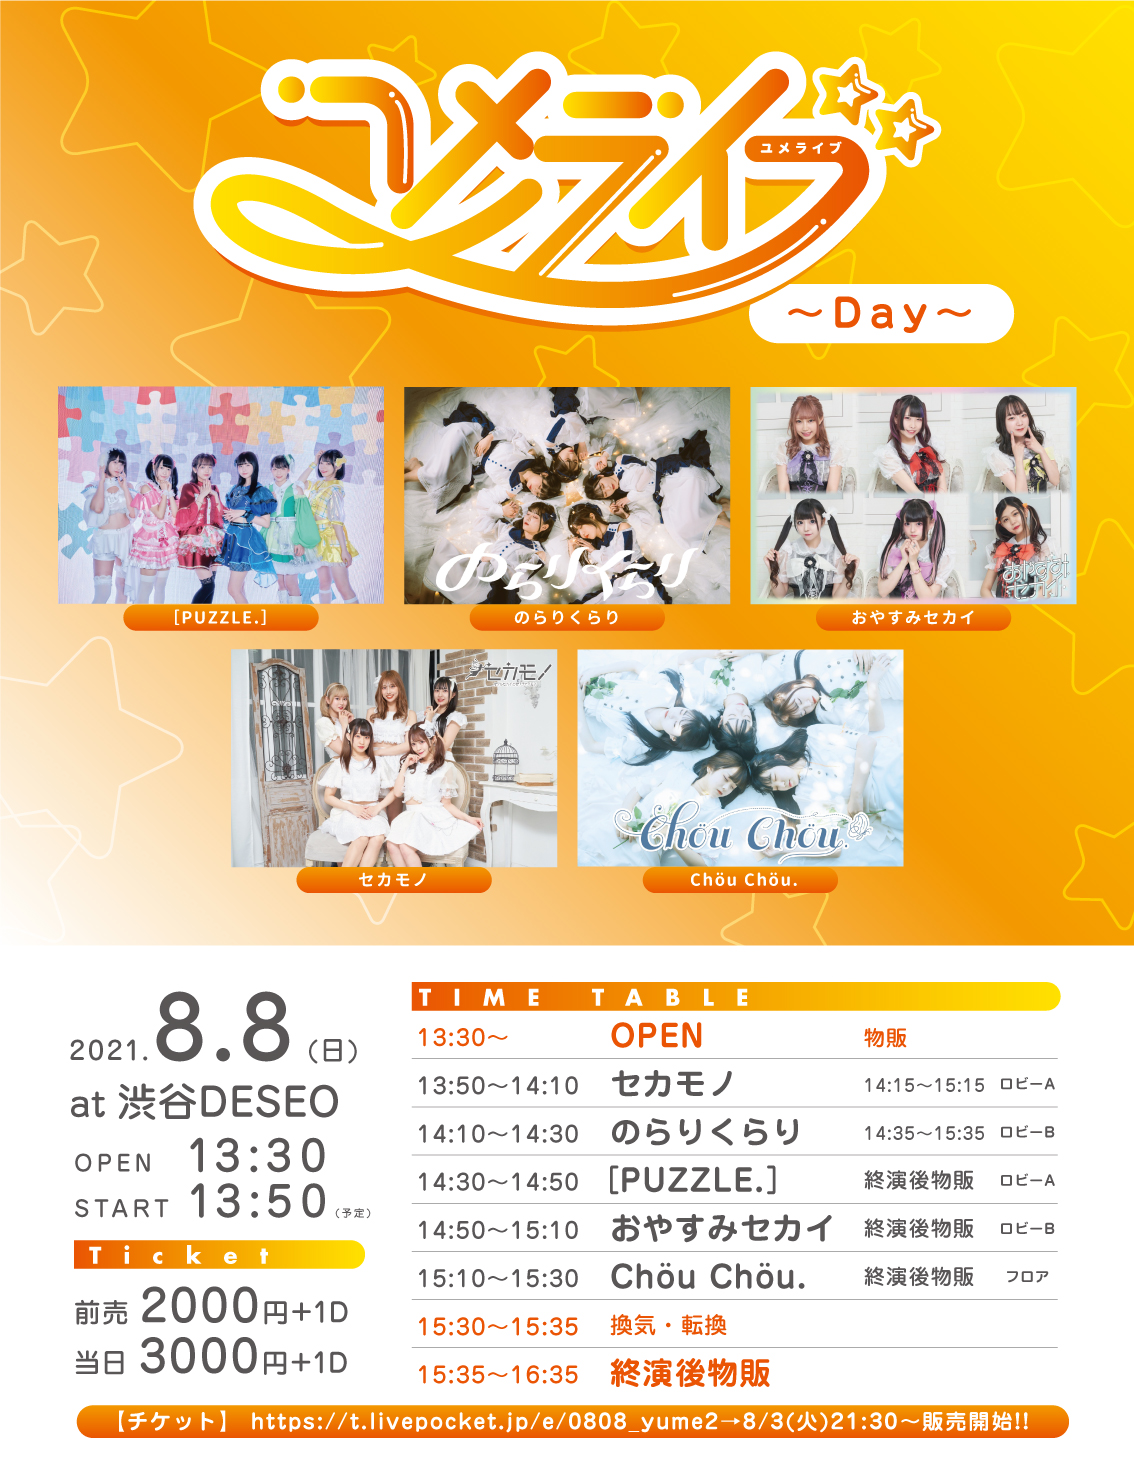 2021/8/8(日)DESEO 2部 『ユメライブ〜Day〜』 渋谷DESEO